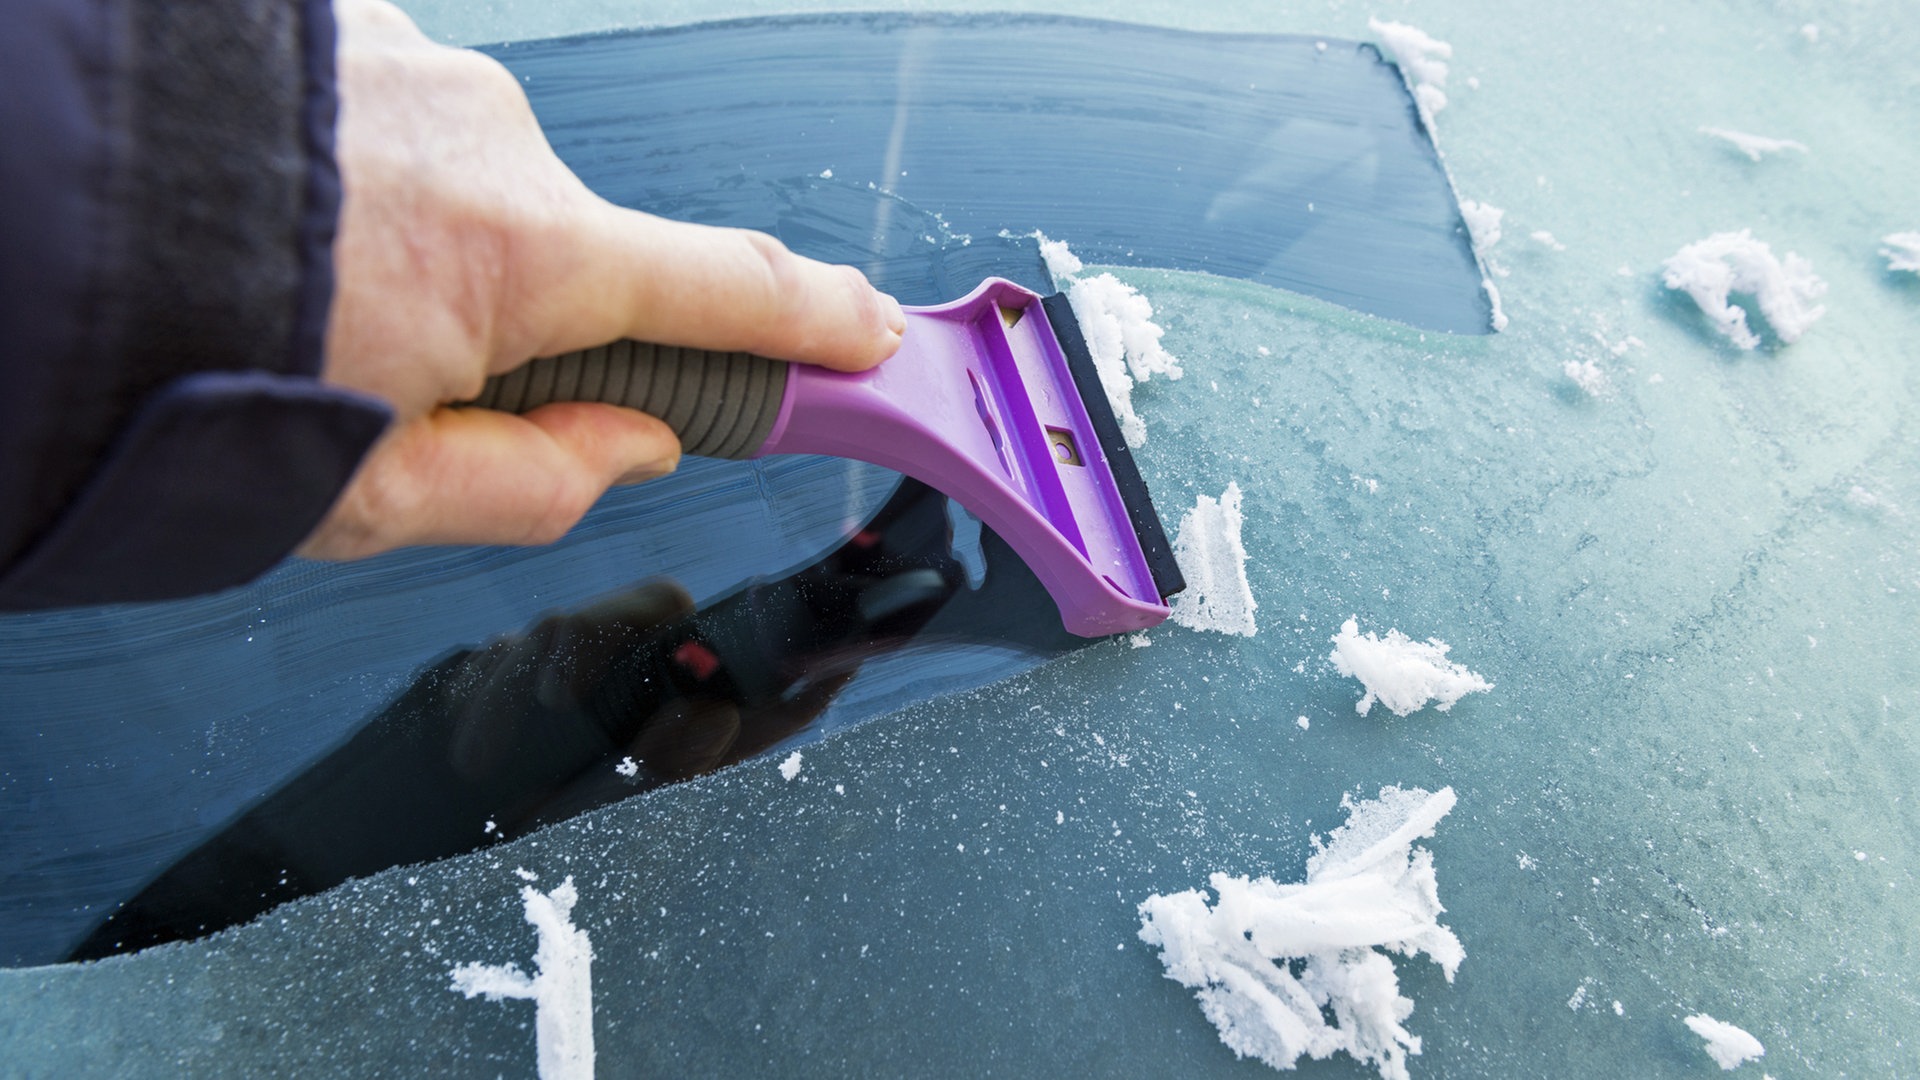 Auto im Winter: Was bei Frost auf keinen Fall drin liegen sollte